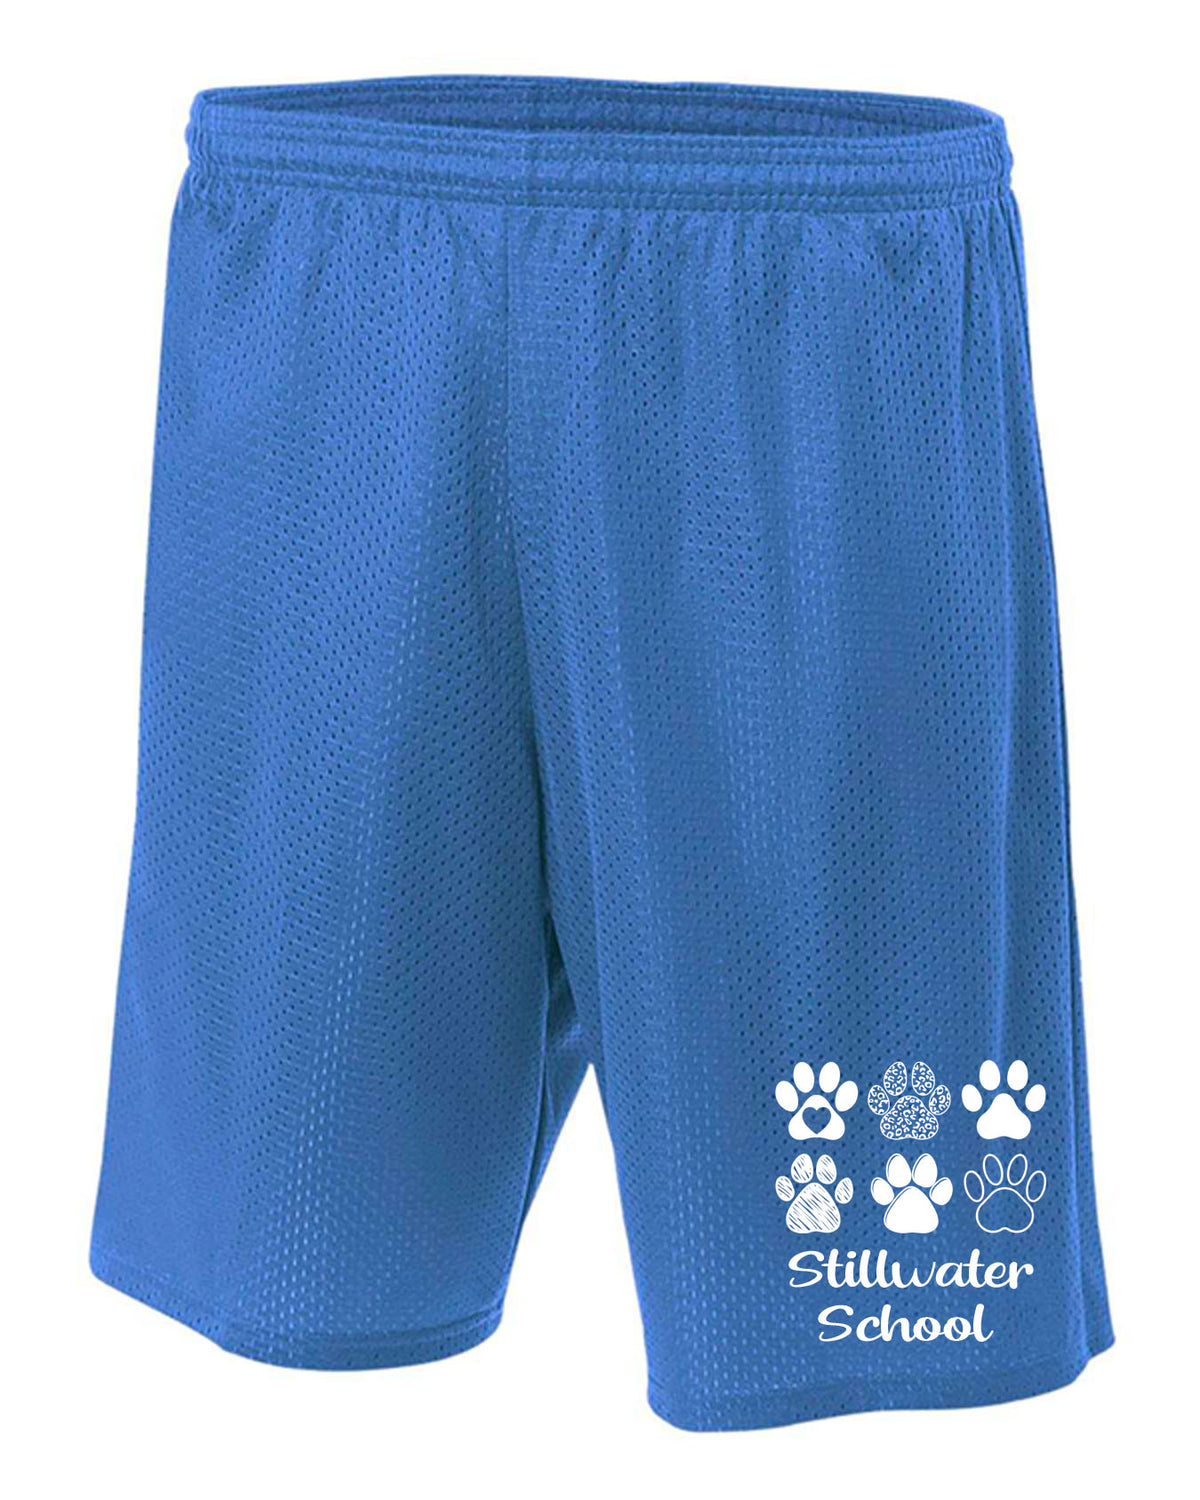 Stillwater Design 20 Mesh Shorts